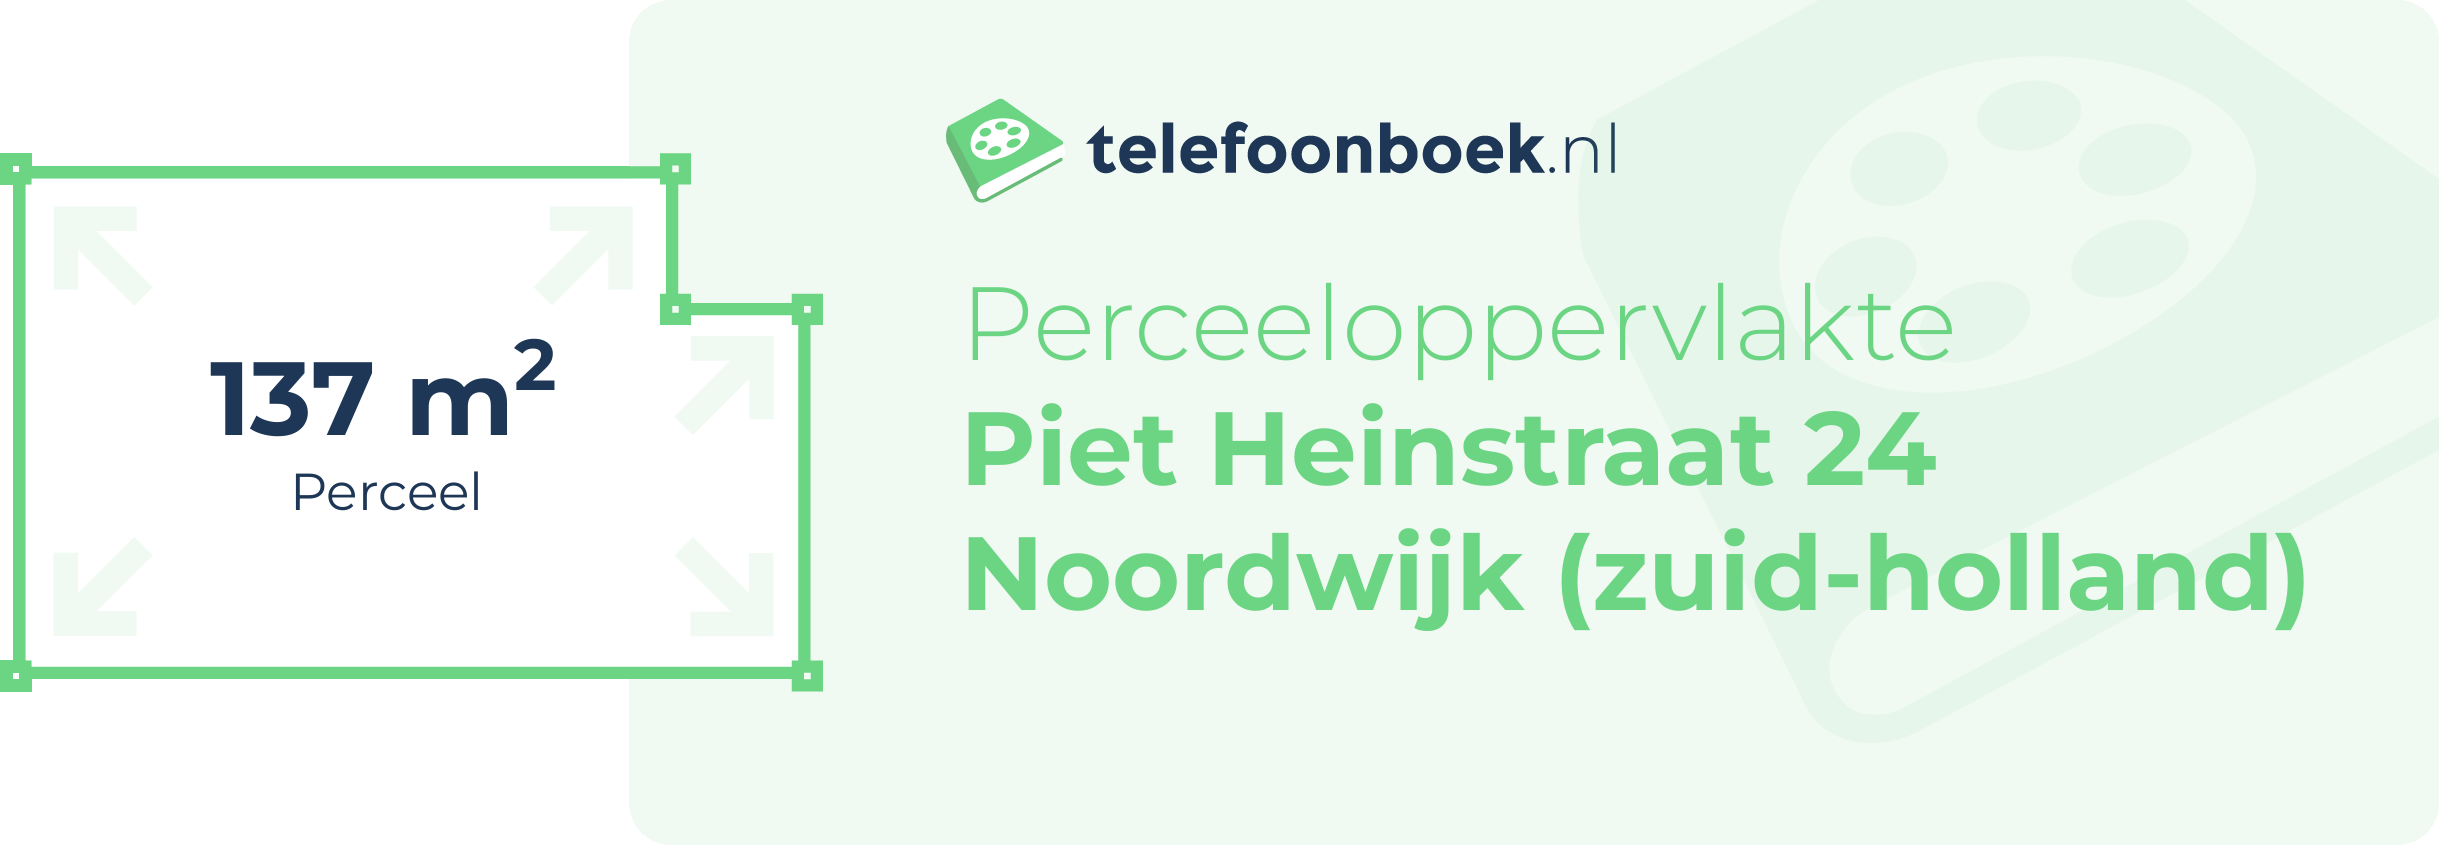 Perceeloppervlakte Piet Heinstraat 24 Noordwijk (Zuid-Holland)